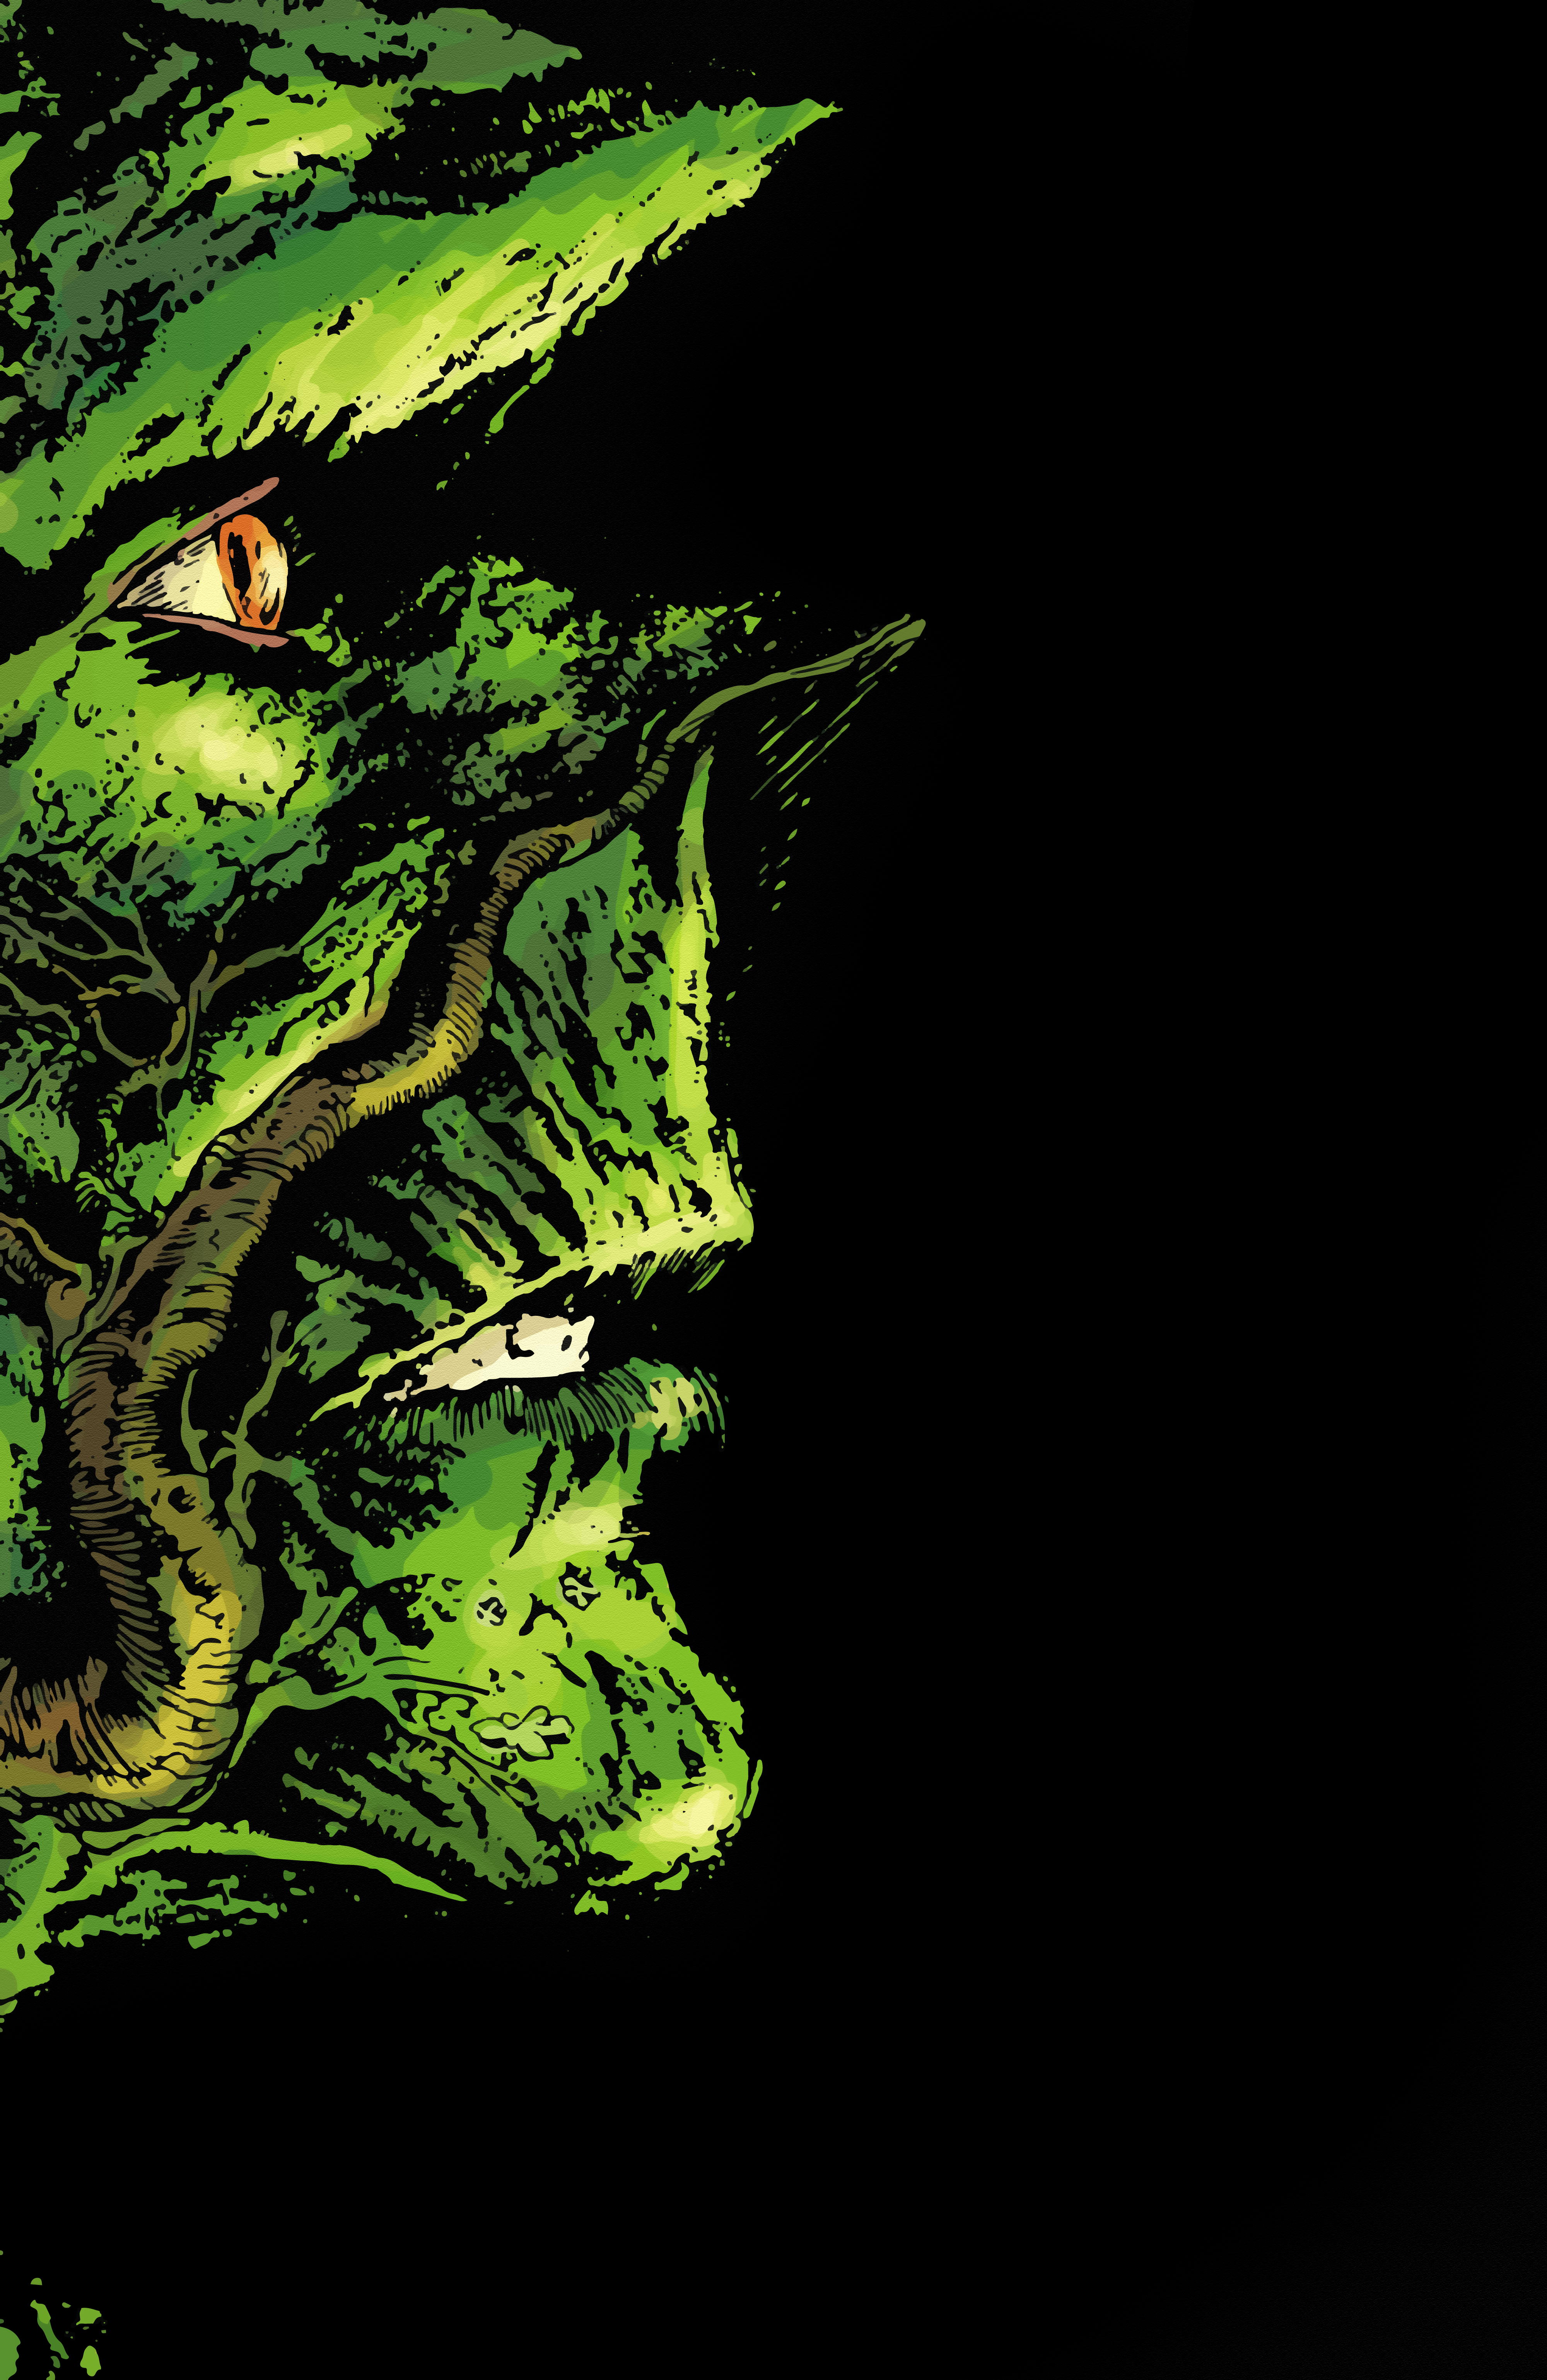 Alan Moore Swamp Thing Comic - HD Wallpaper 